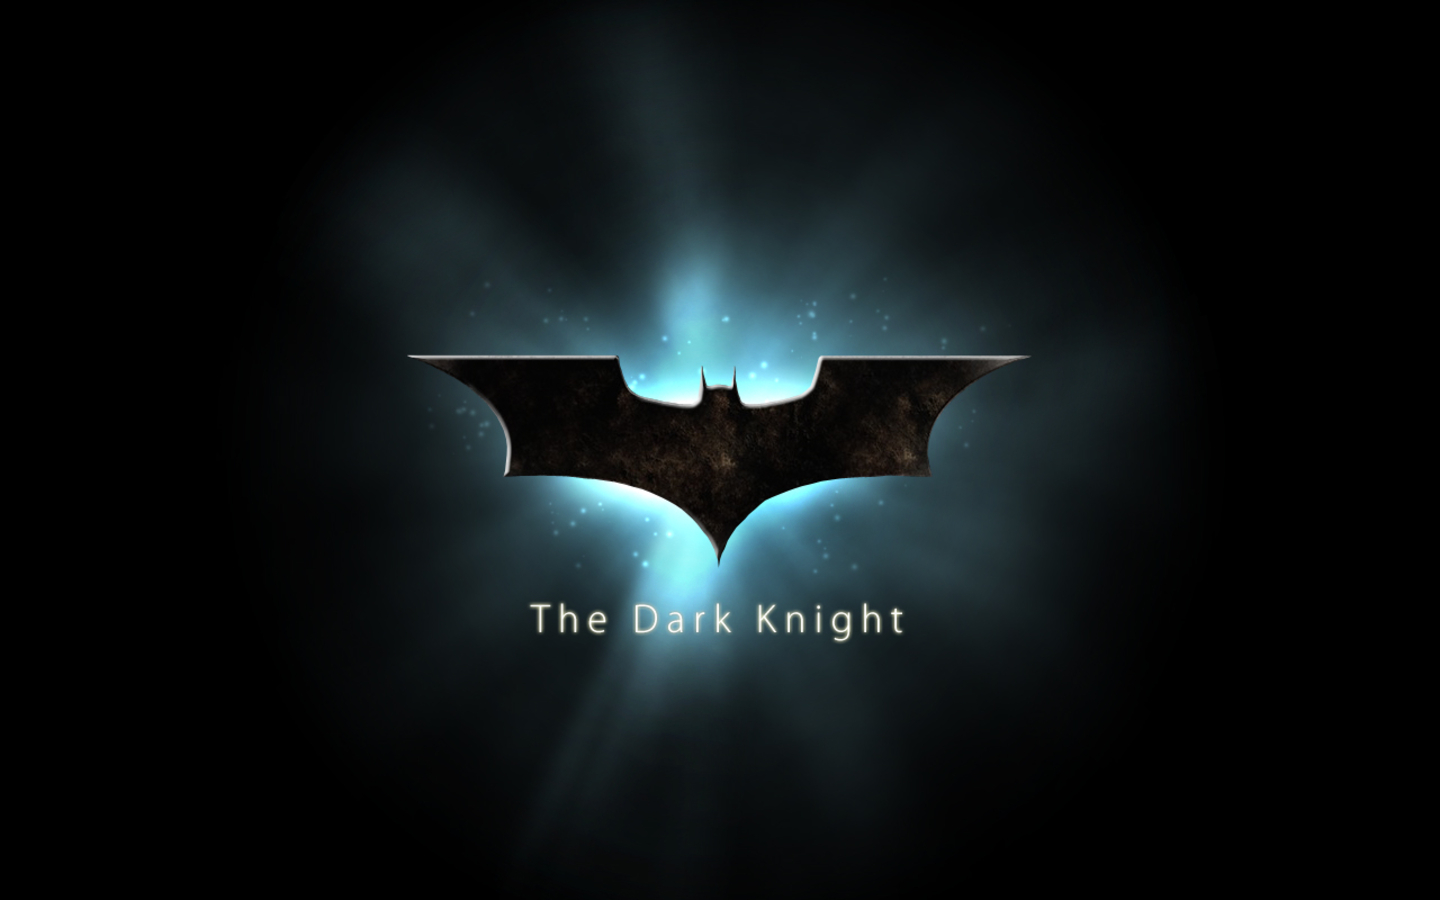  highres1440x900 batman logo the dark knight wallpaper by gazdena wide